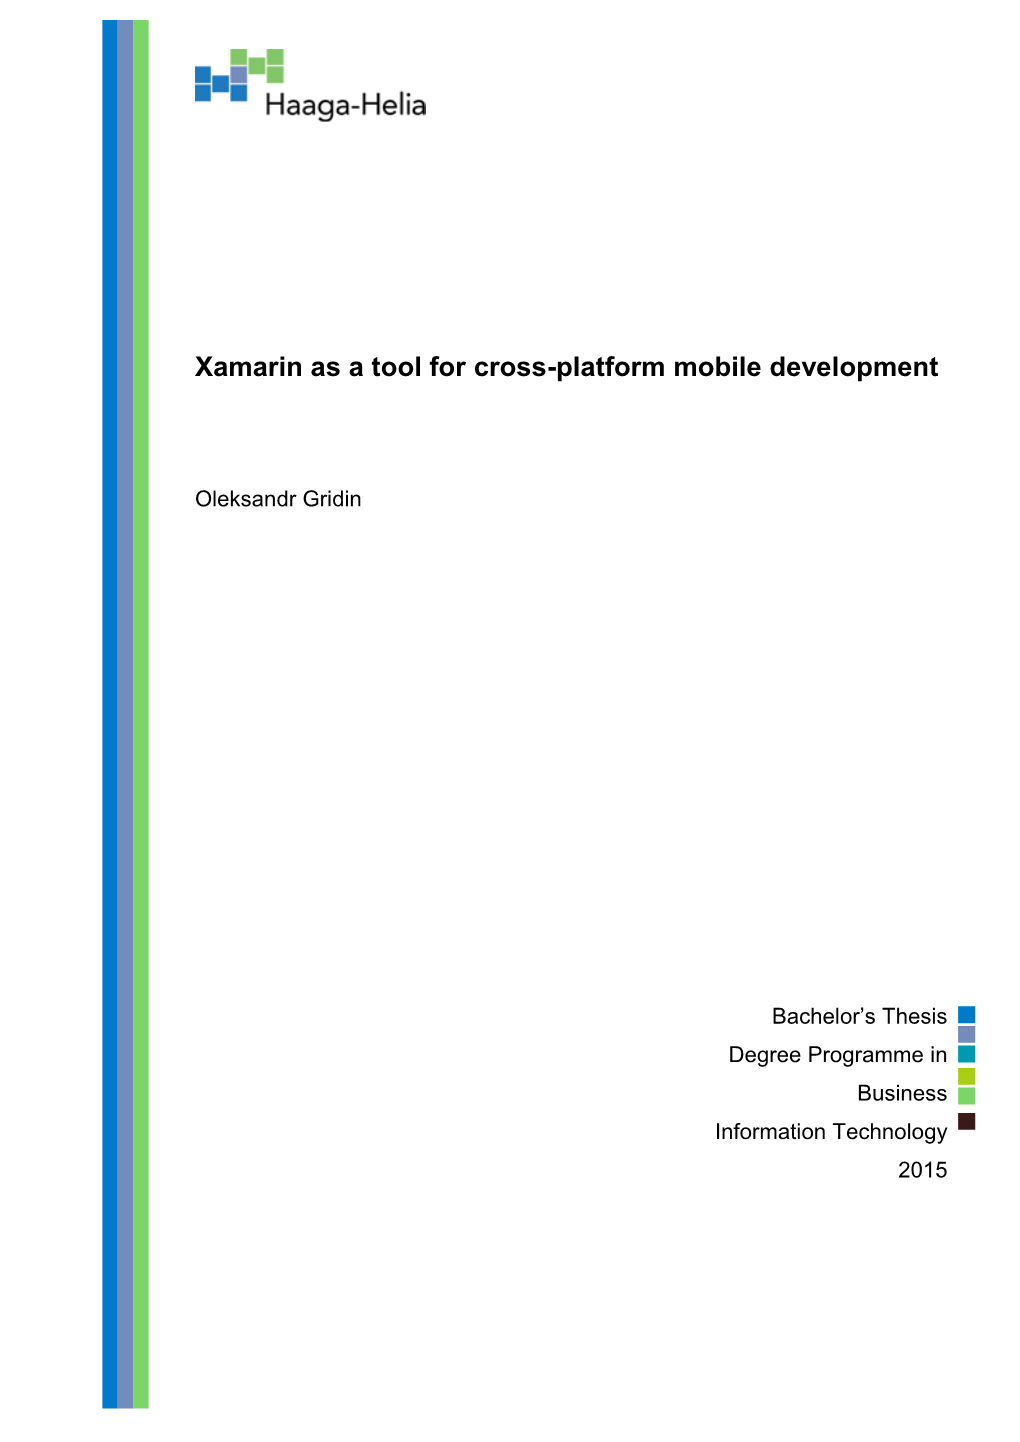 Xamarin As a Tool for Cross-Platform Mobile Development